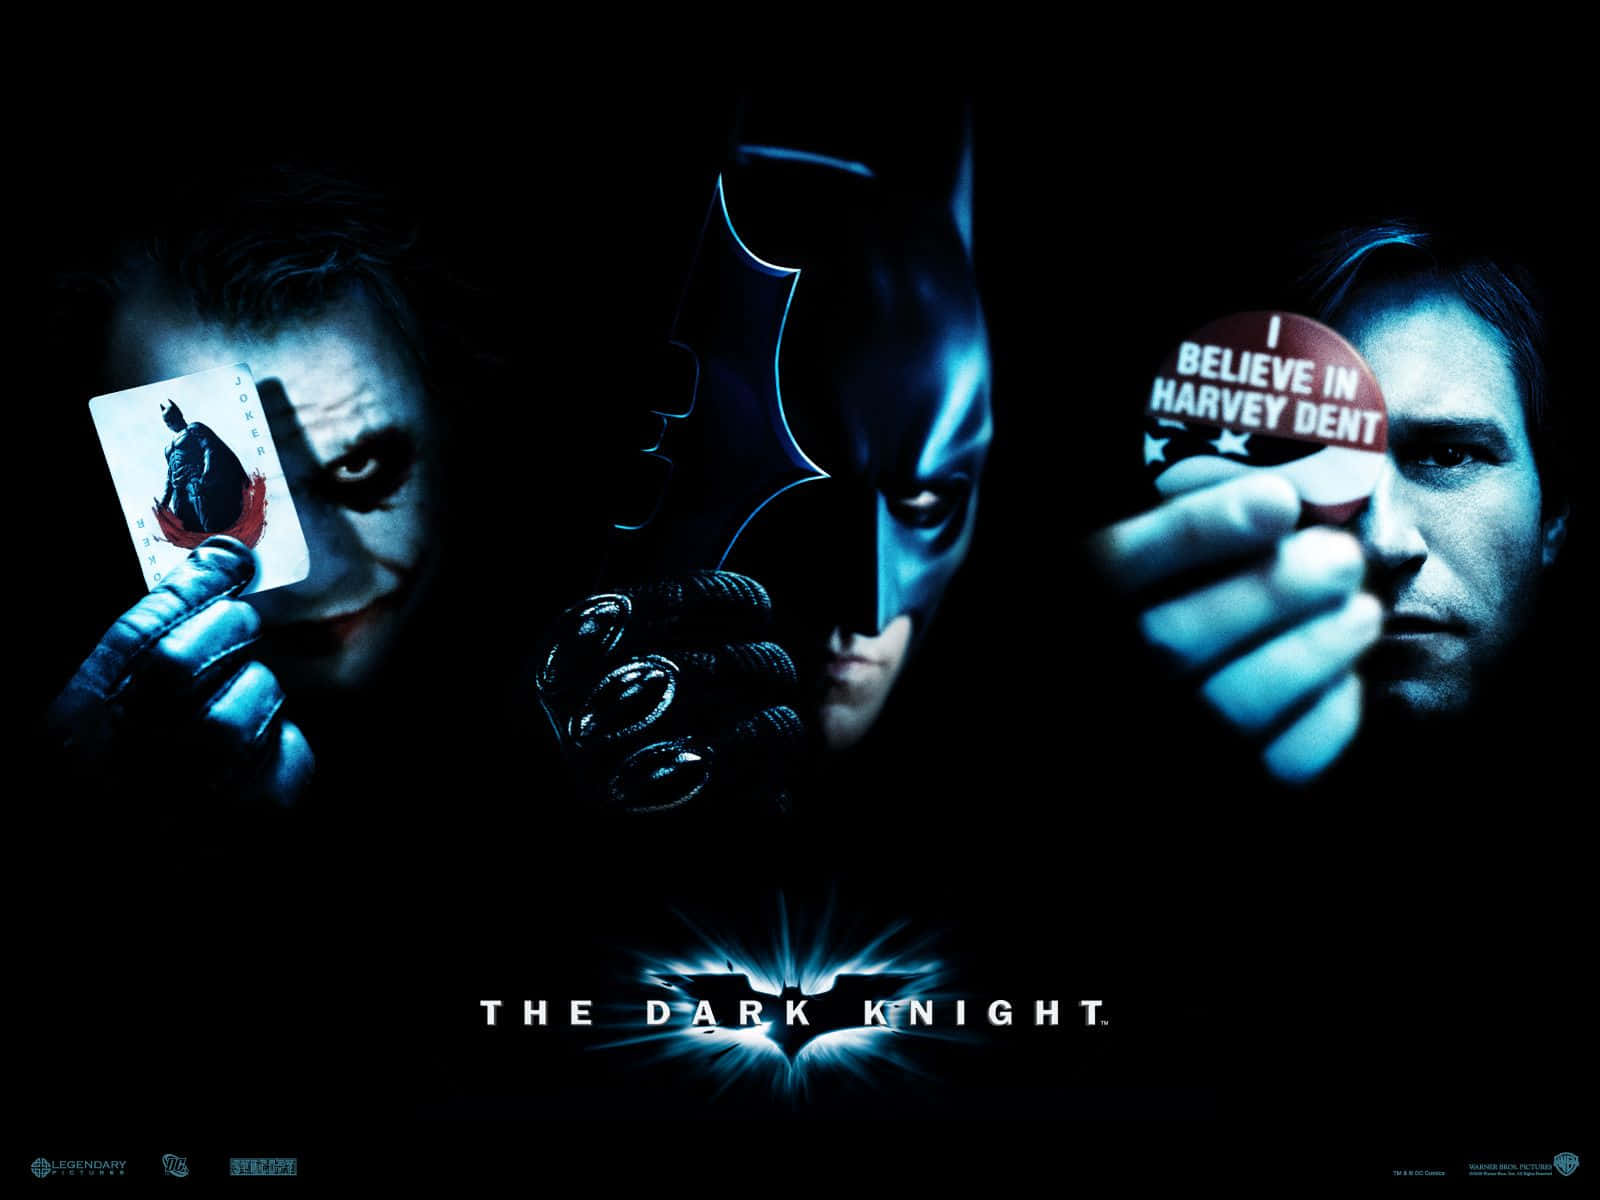 The Dark Knight Poster With Batman, Joker And A Joker